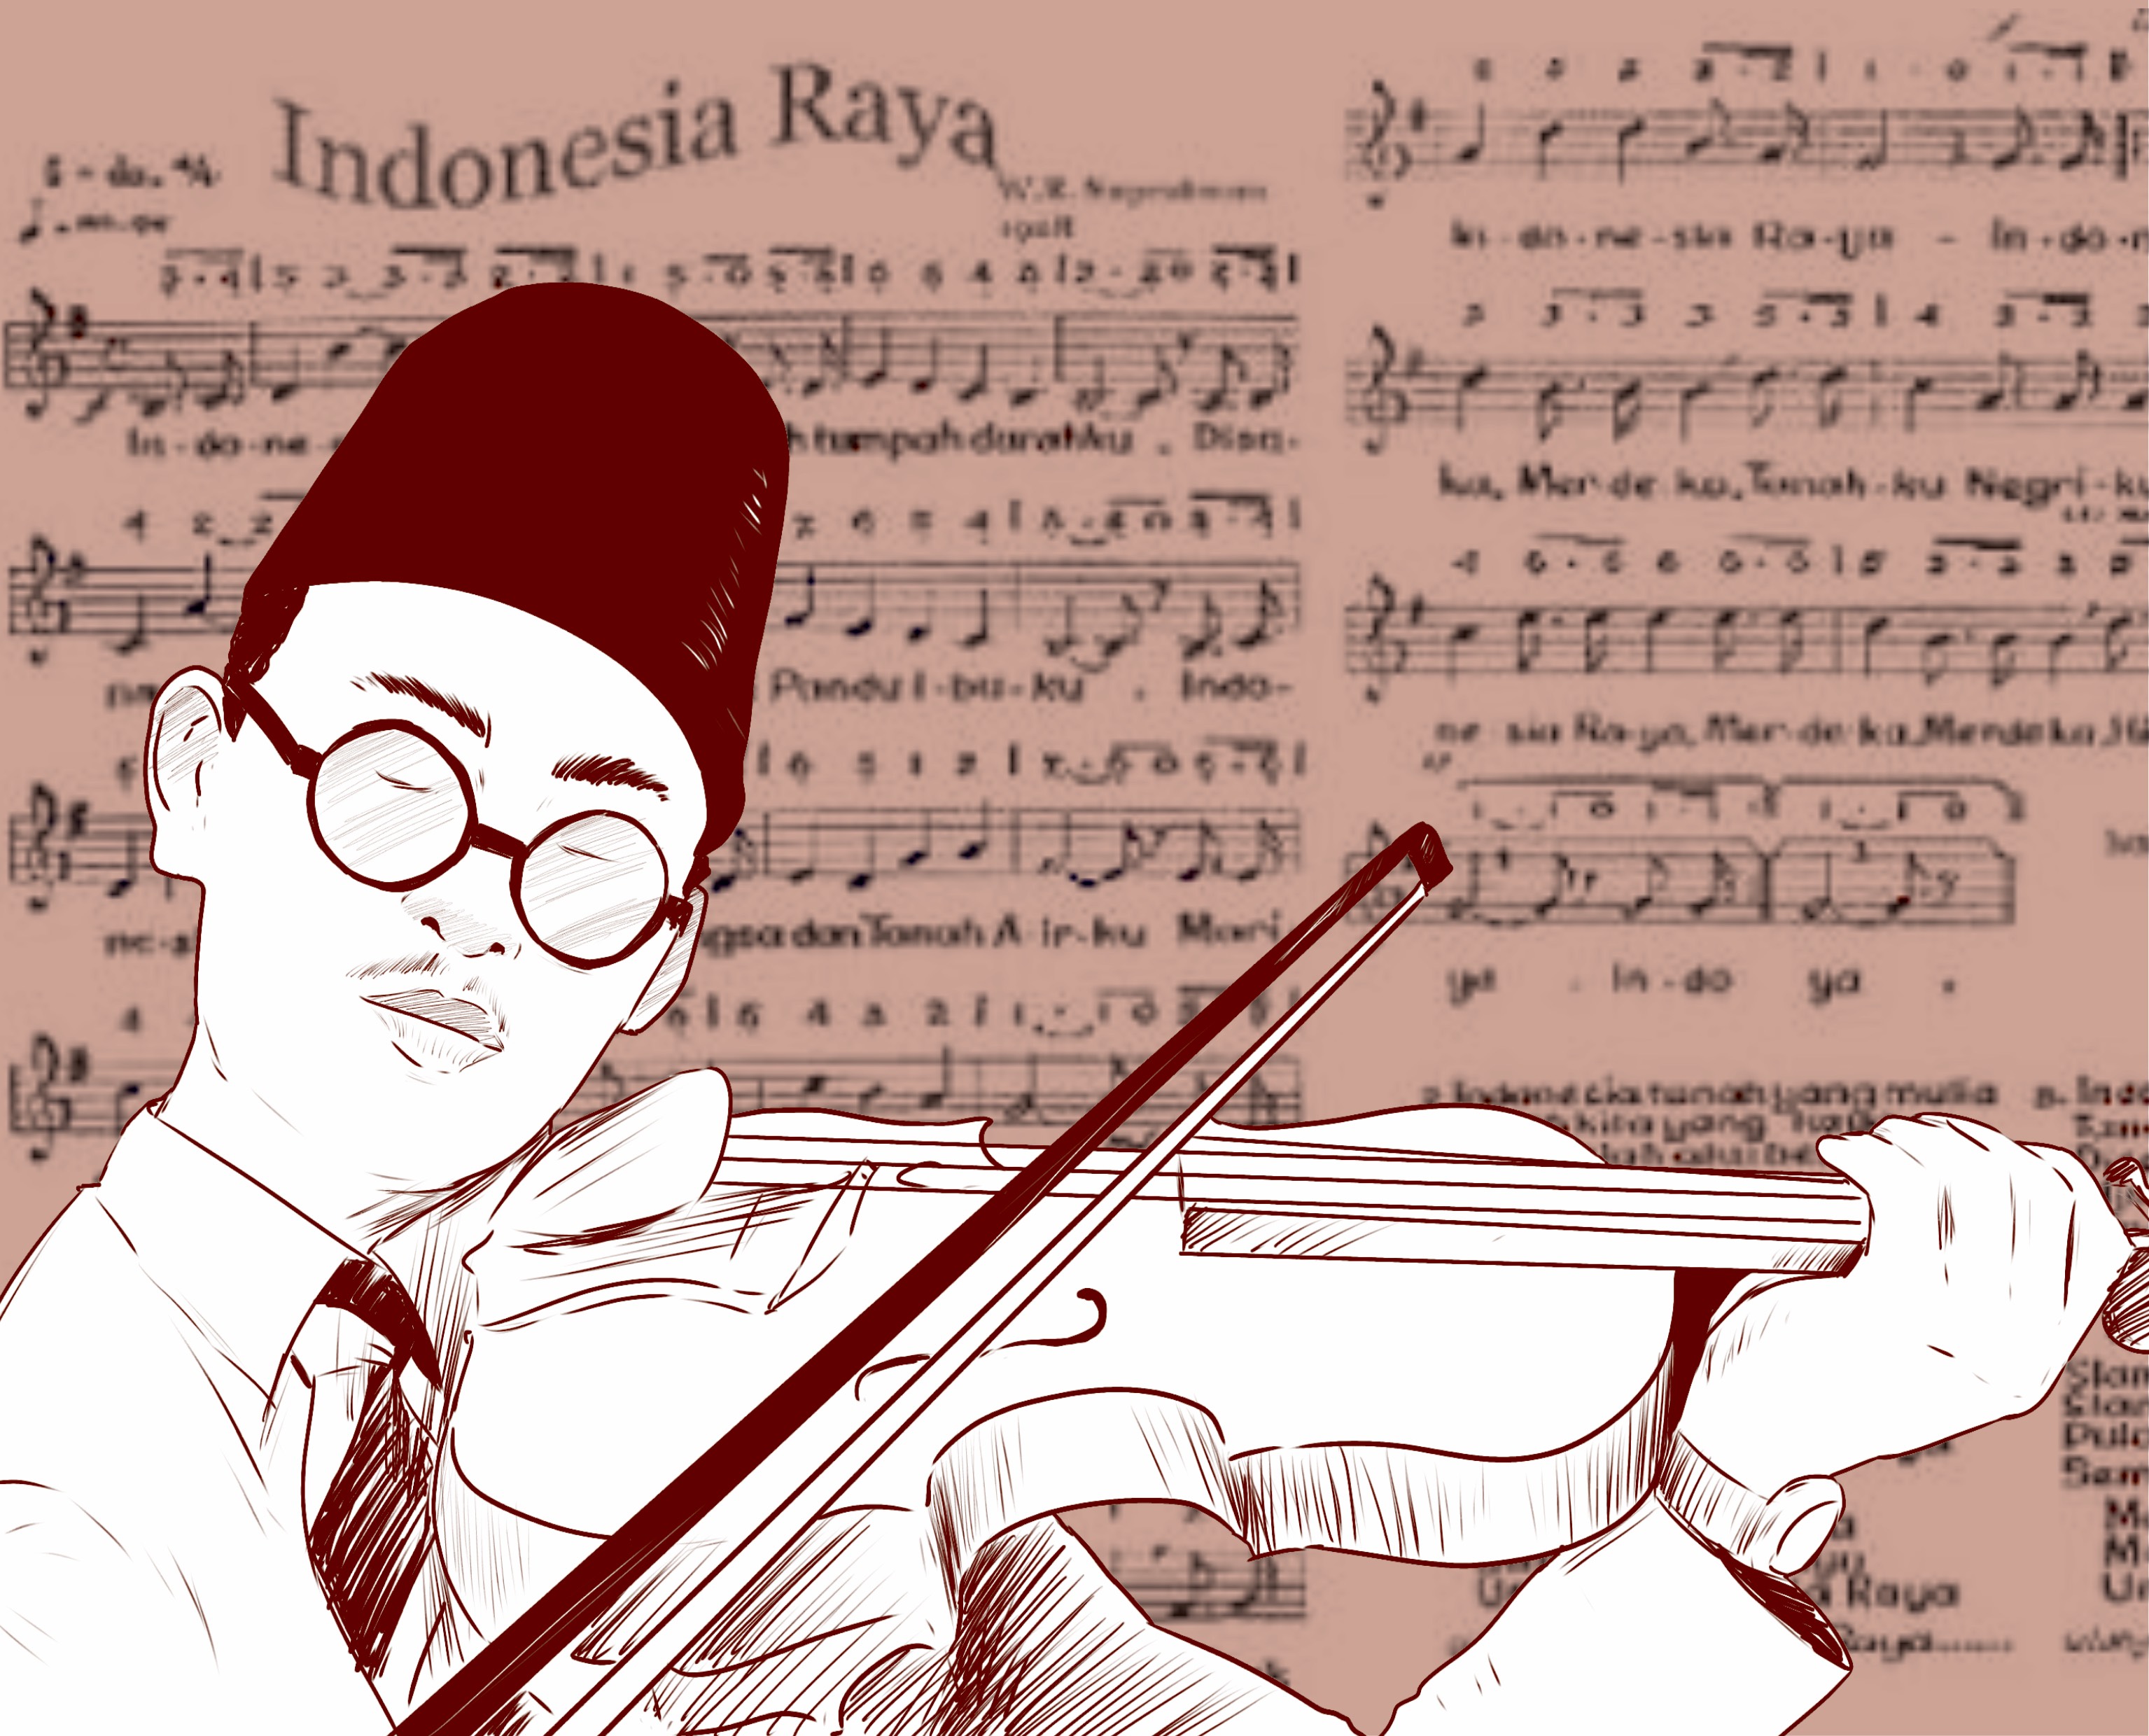 Kisah Dibalik Lahirnya Lagu Kebangsaan Indonesia Raya ...